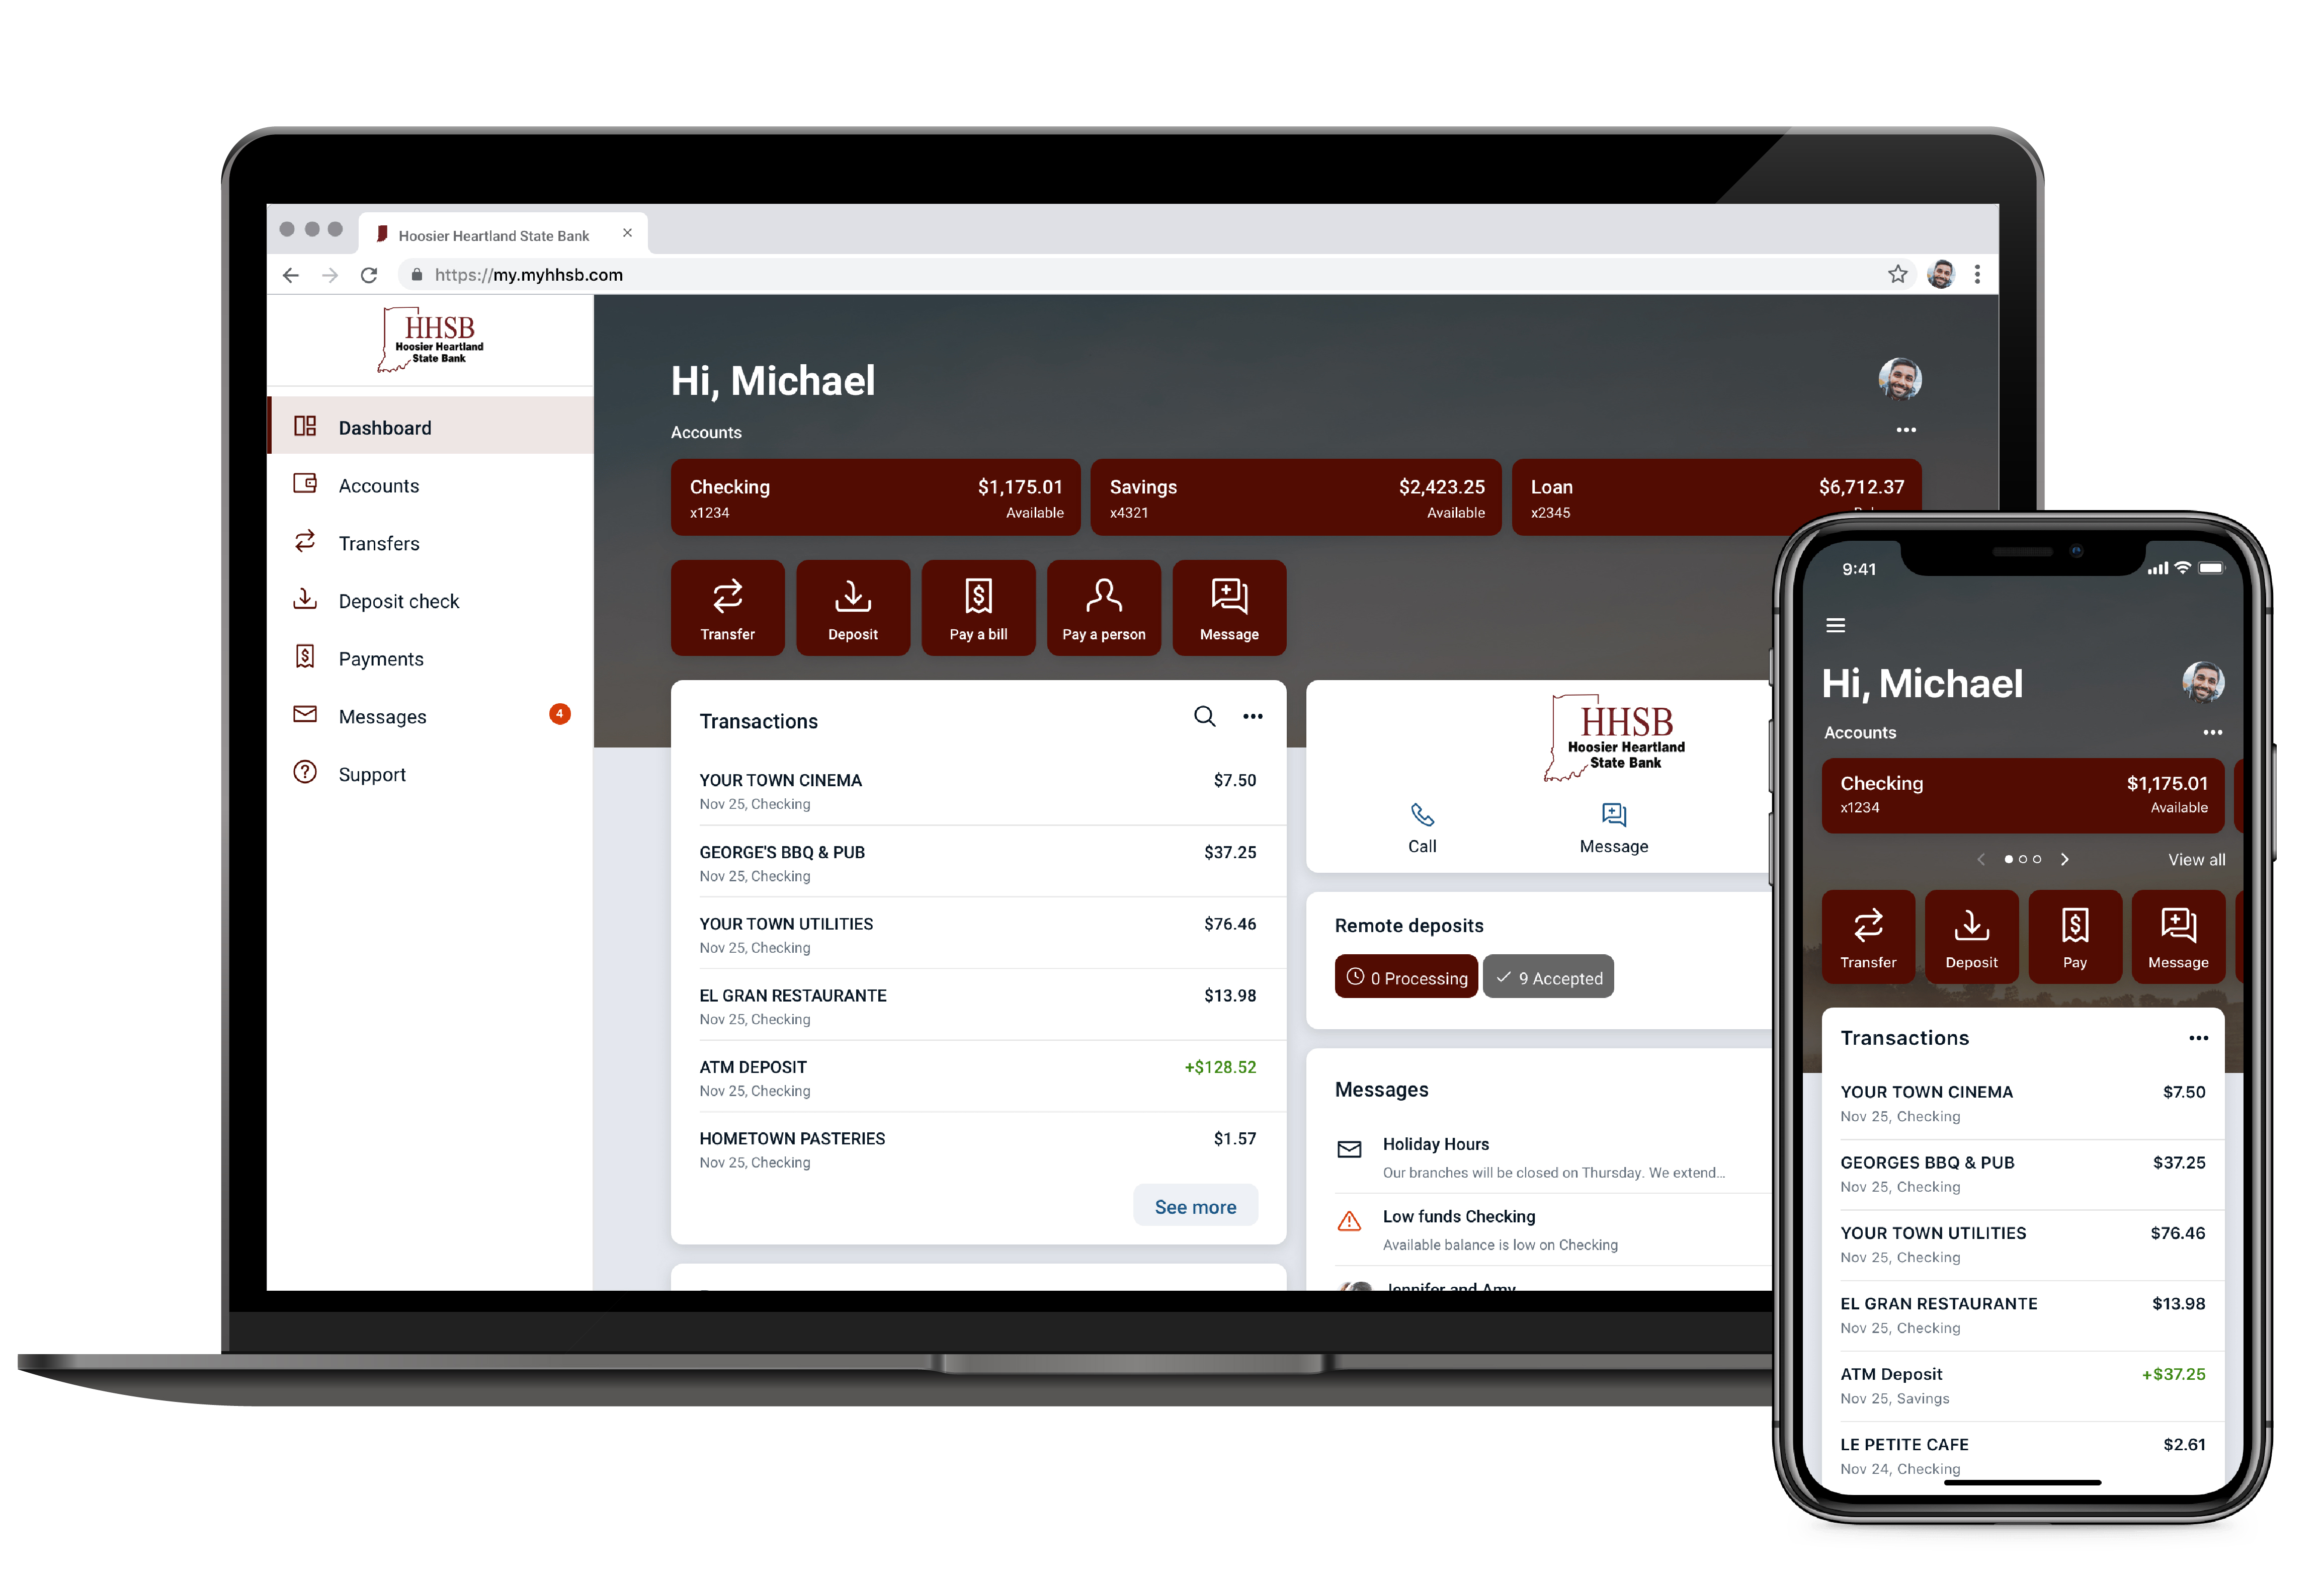 Online Banking platform display on desktop and mobile devices